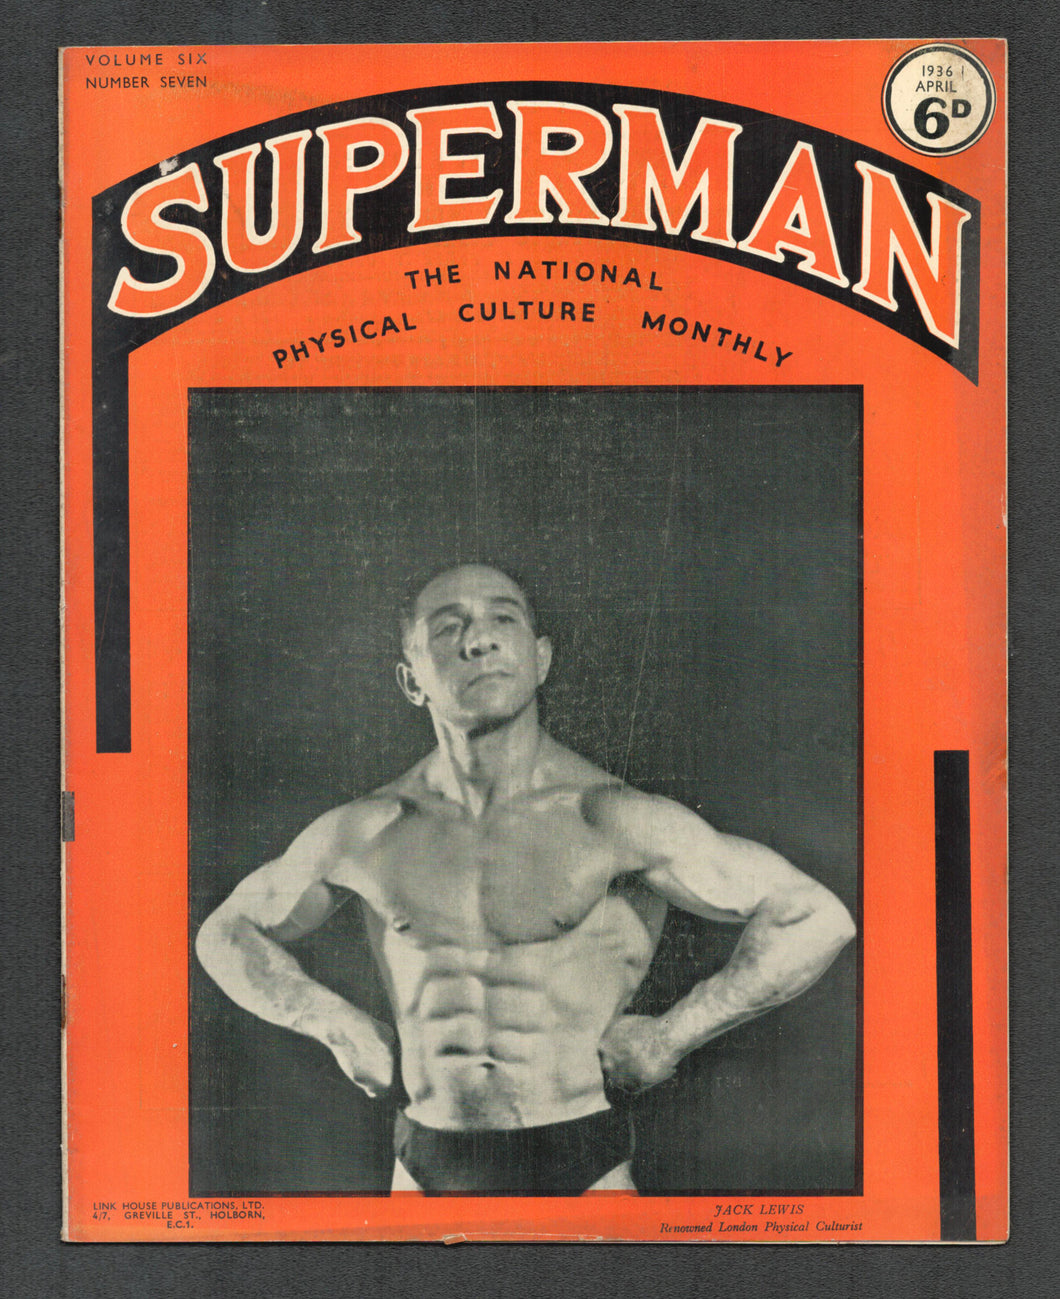 Superman Vol 6 No 7 April 1936